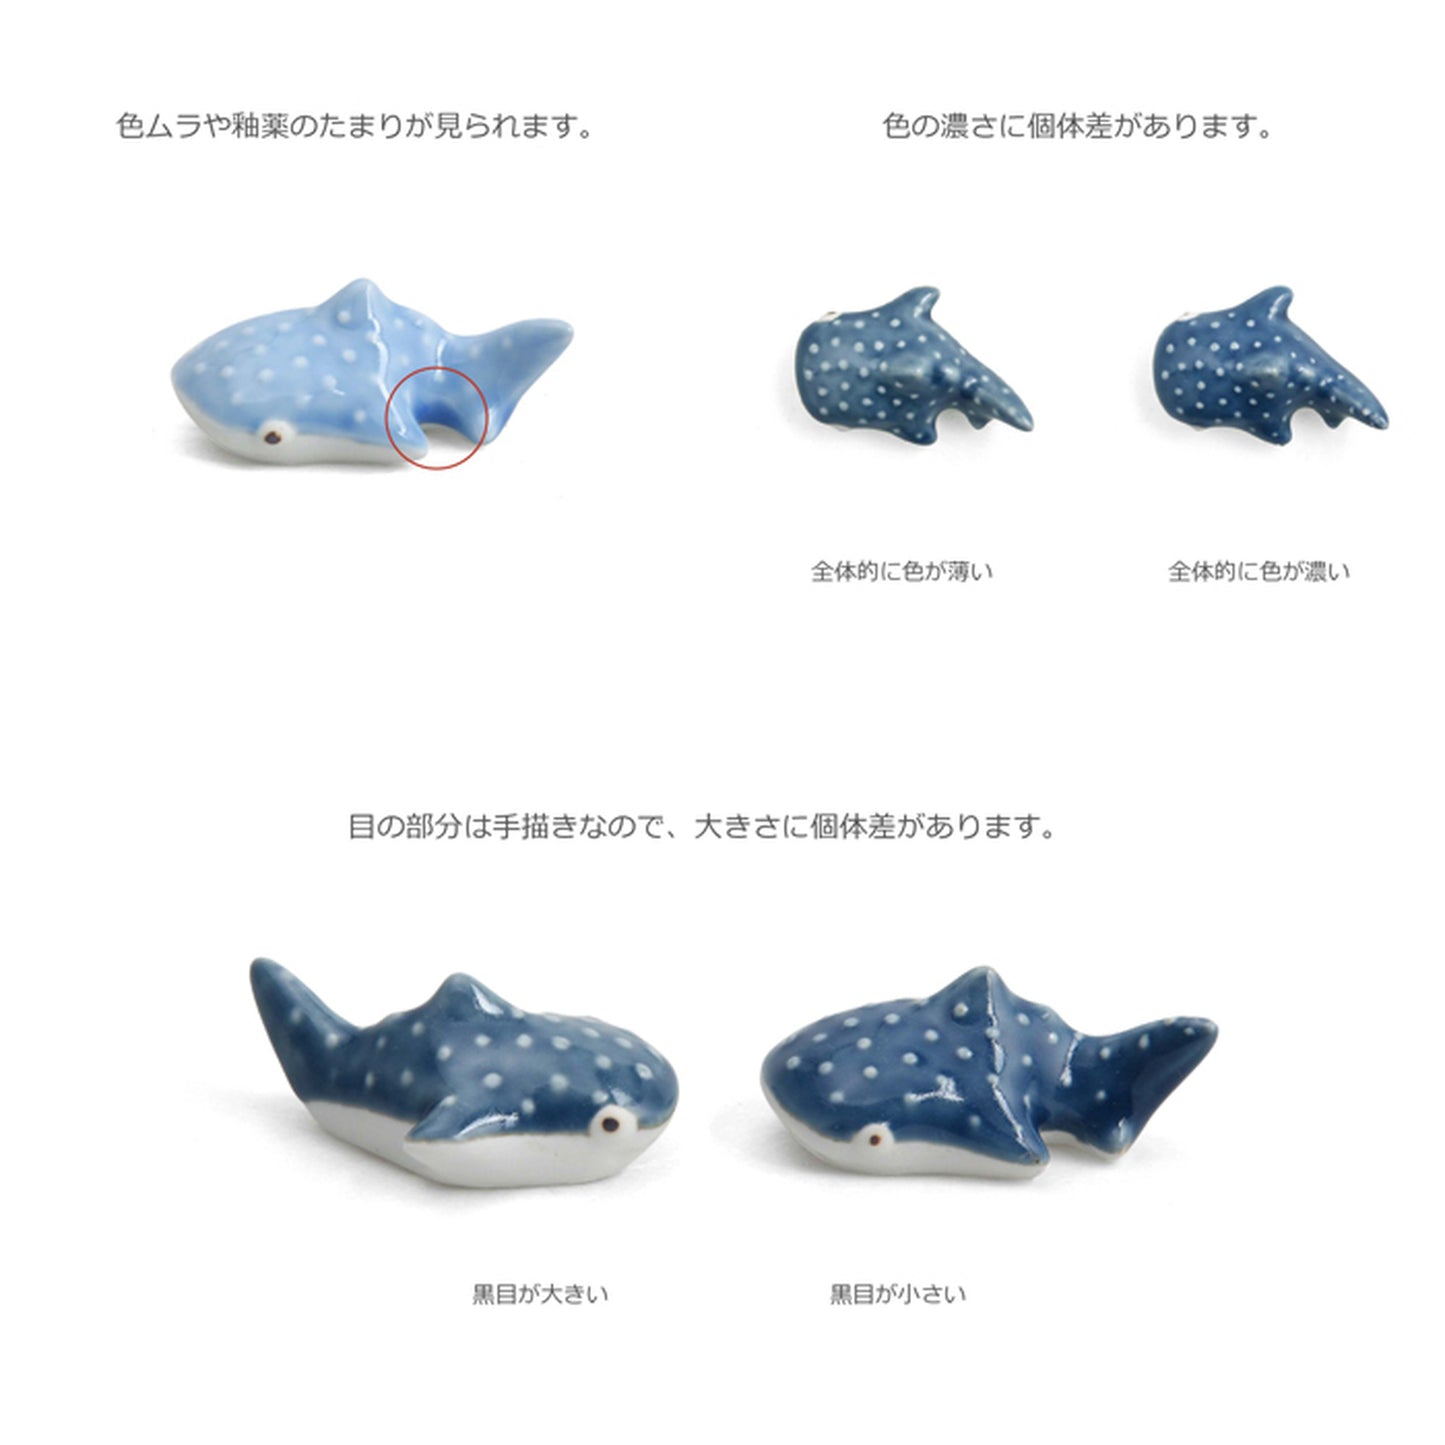 [natural69][鲸鲨][筷子]波佐见焼时尚北欧风蓝色可爱